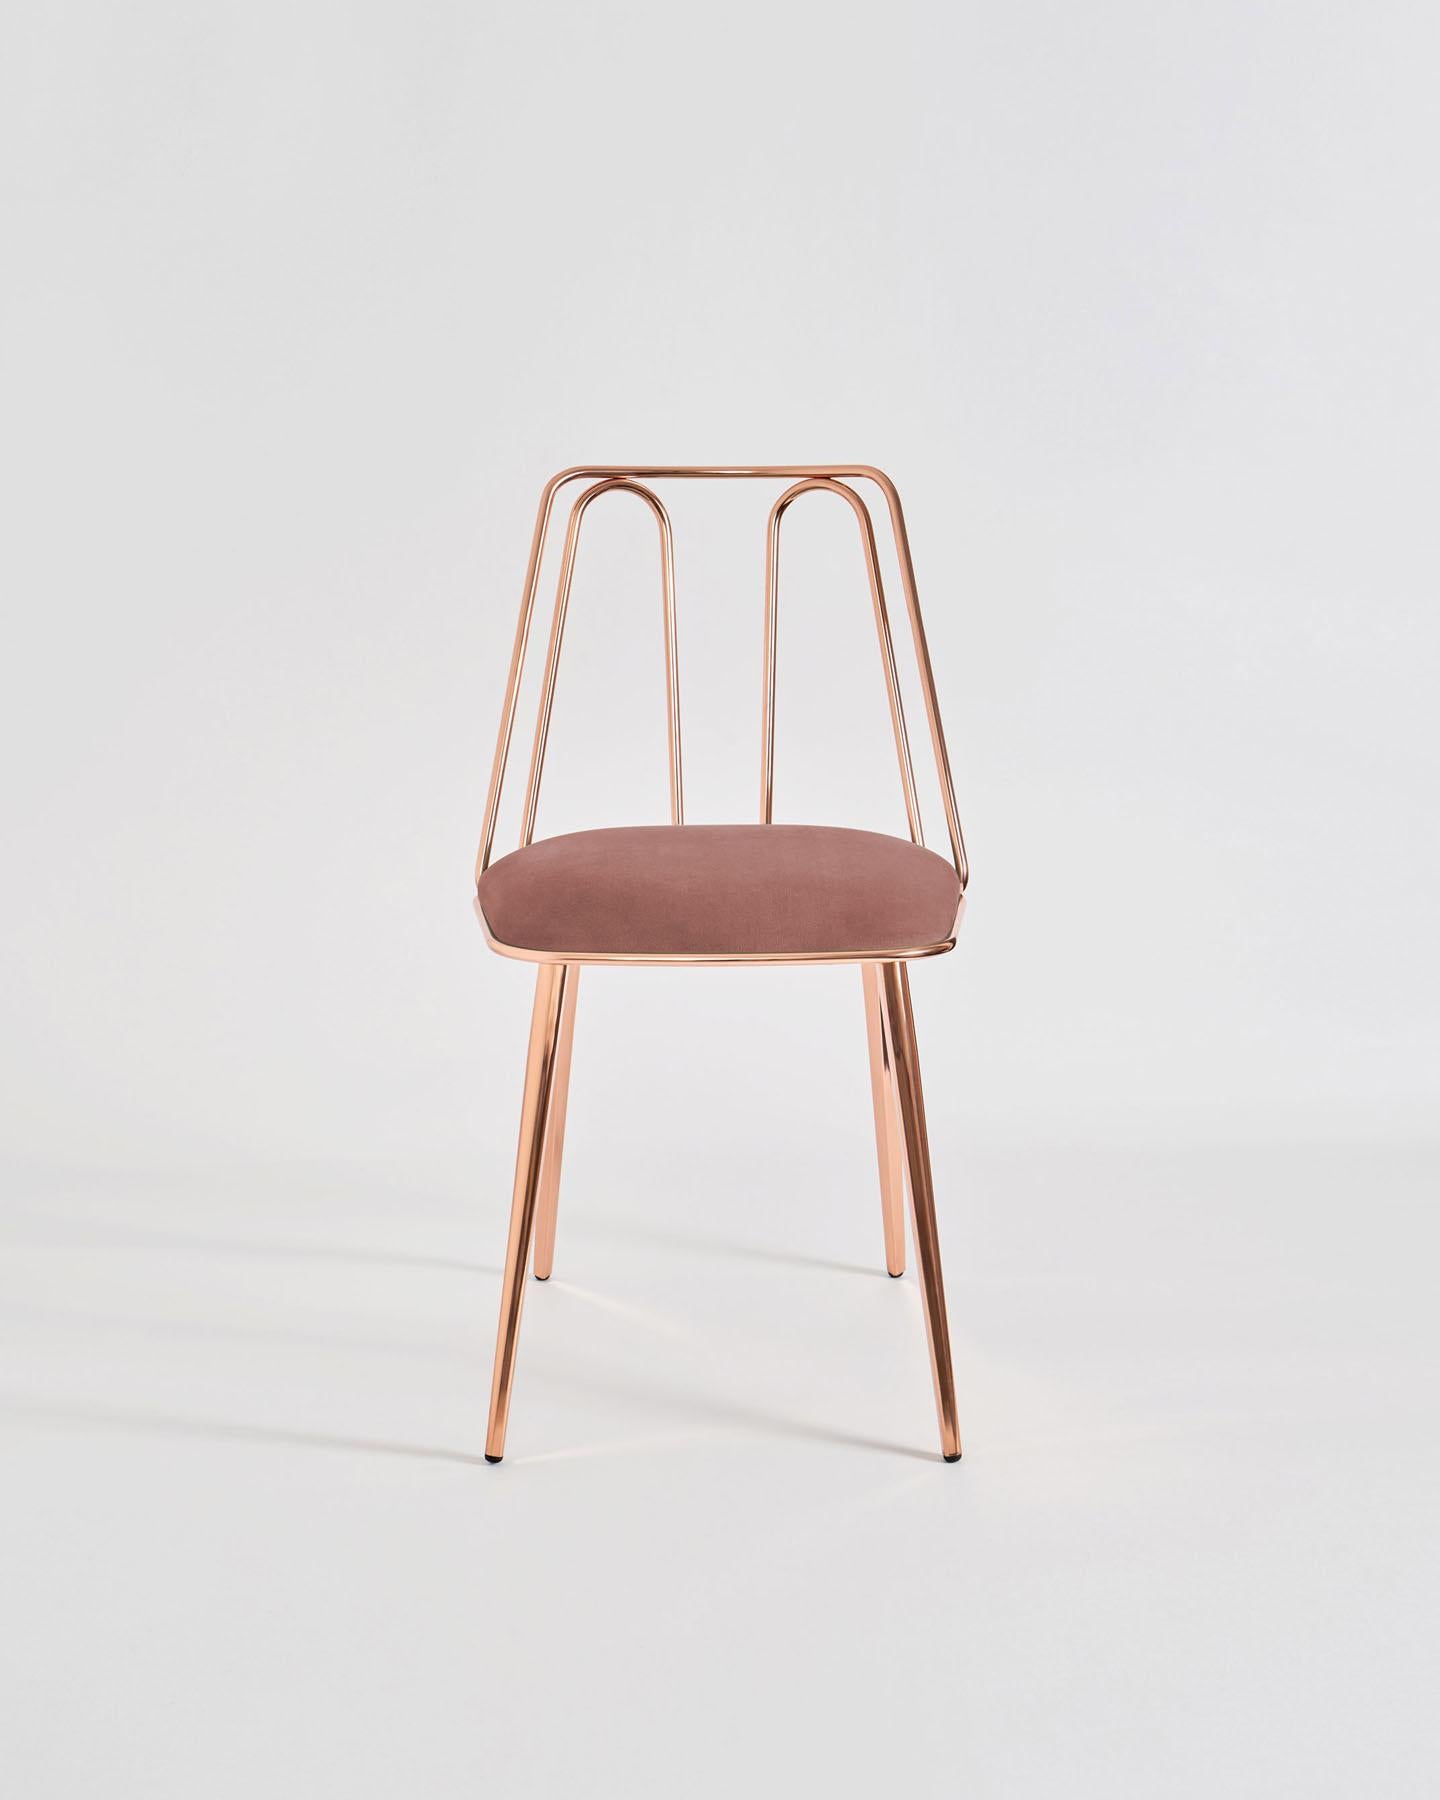 Certosina, Design von Enrico Girotti, ein schlanker Metallstab umreißt die ideale Oberfläche der Rückenlehne mit einer abwechselnden und gewundenen Bewegung und interagiert mit dem Sitz in einer Umarmung, aus der sich trapezförmige Beine nach unten